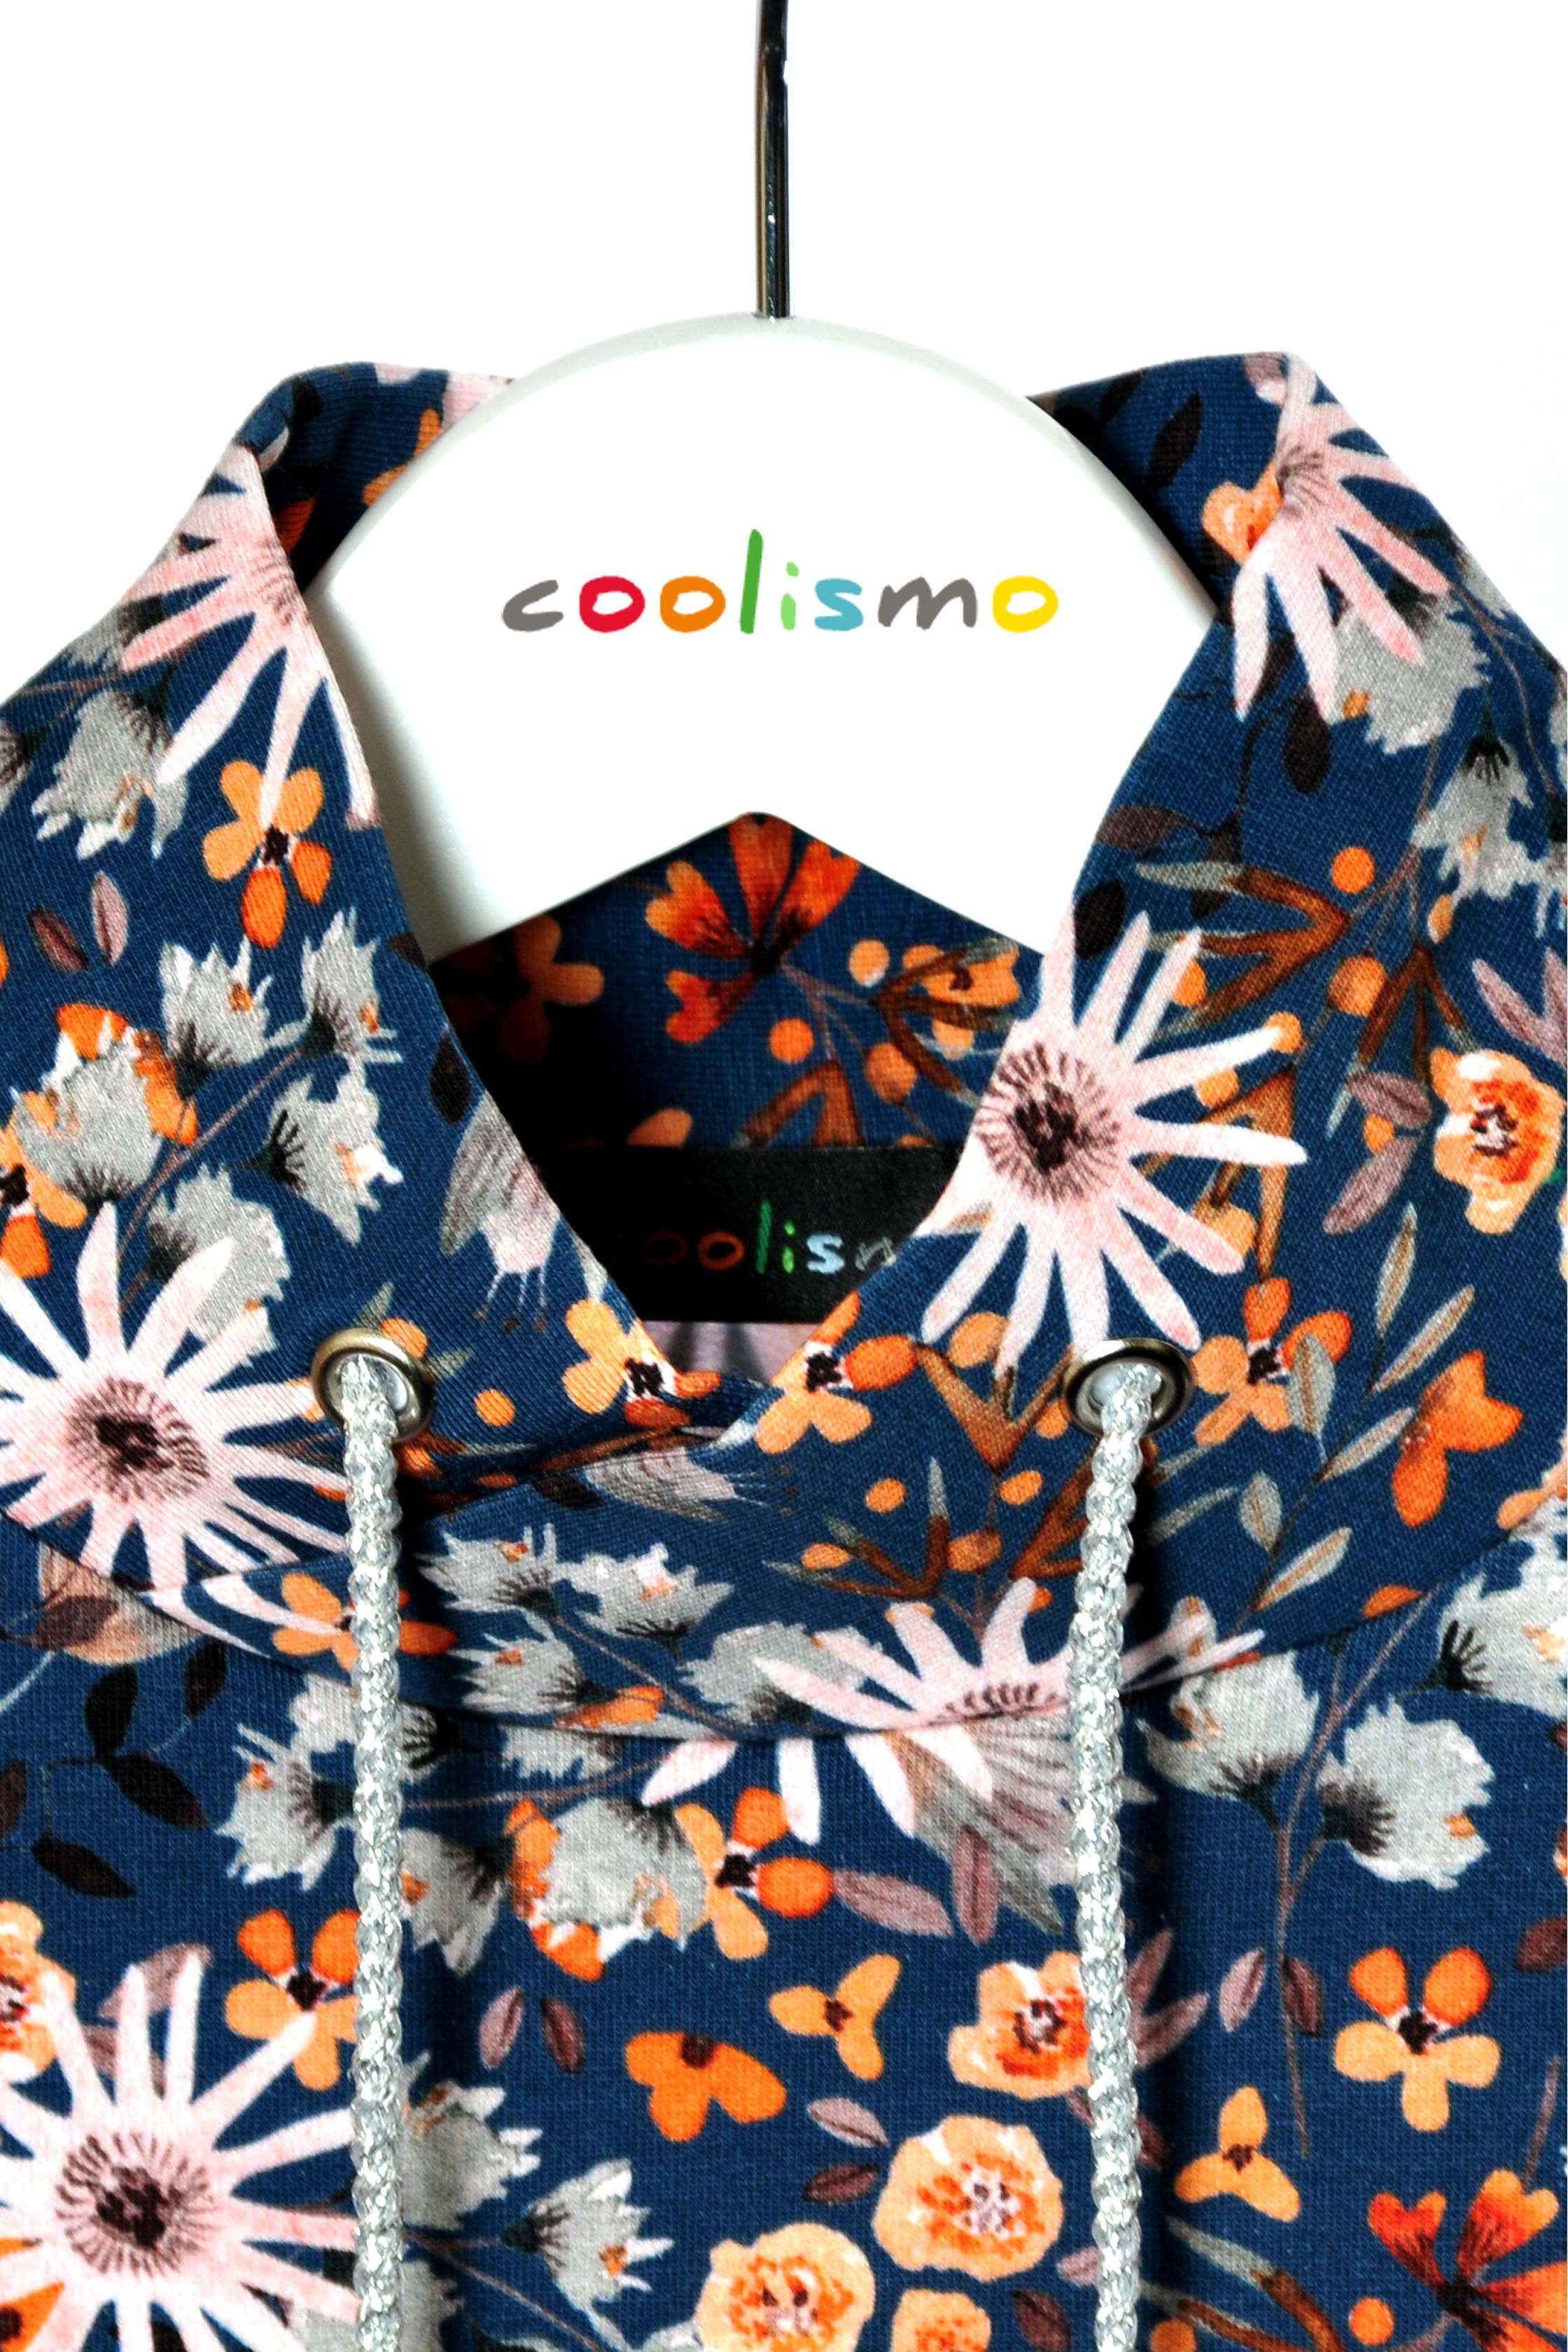 coolismo Sweatshirt Sweater für Mädchen blau Produktion Motivdruck Baumwolle, mit europäische Blumen